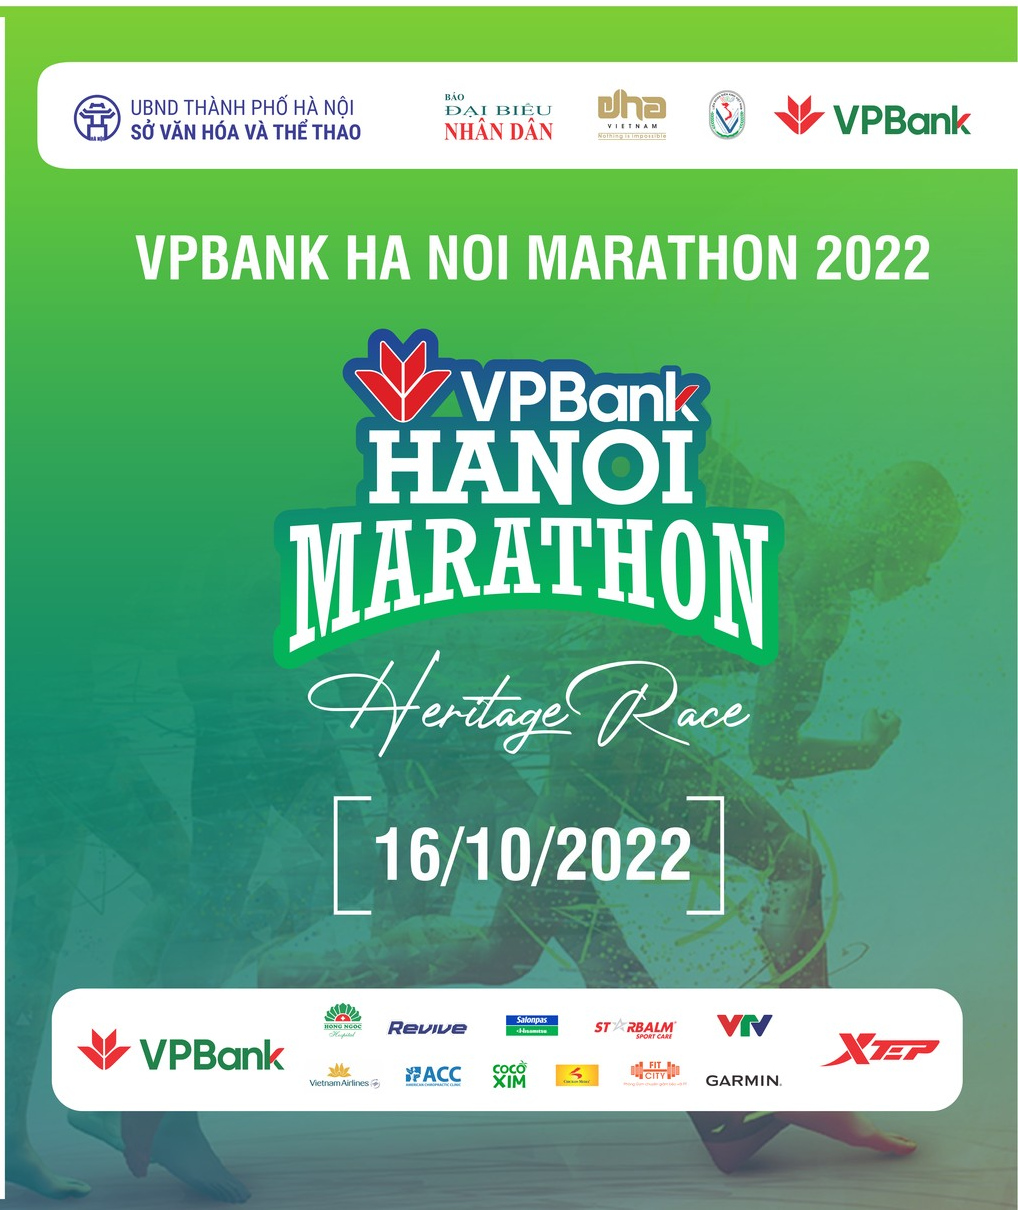 Những Điểm Đặc Sắc Của Đường Chạy VPBank Hanoi Marathon 2022